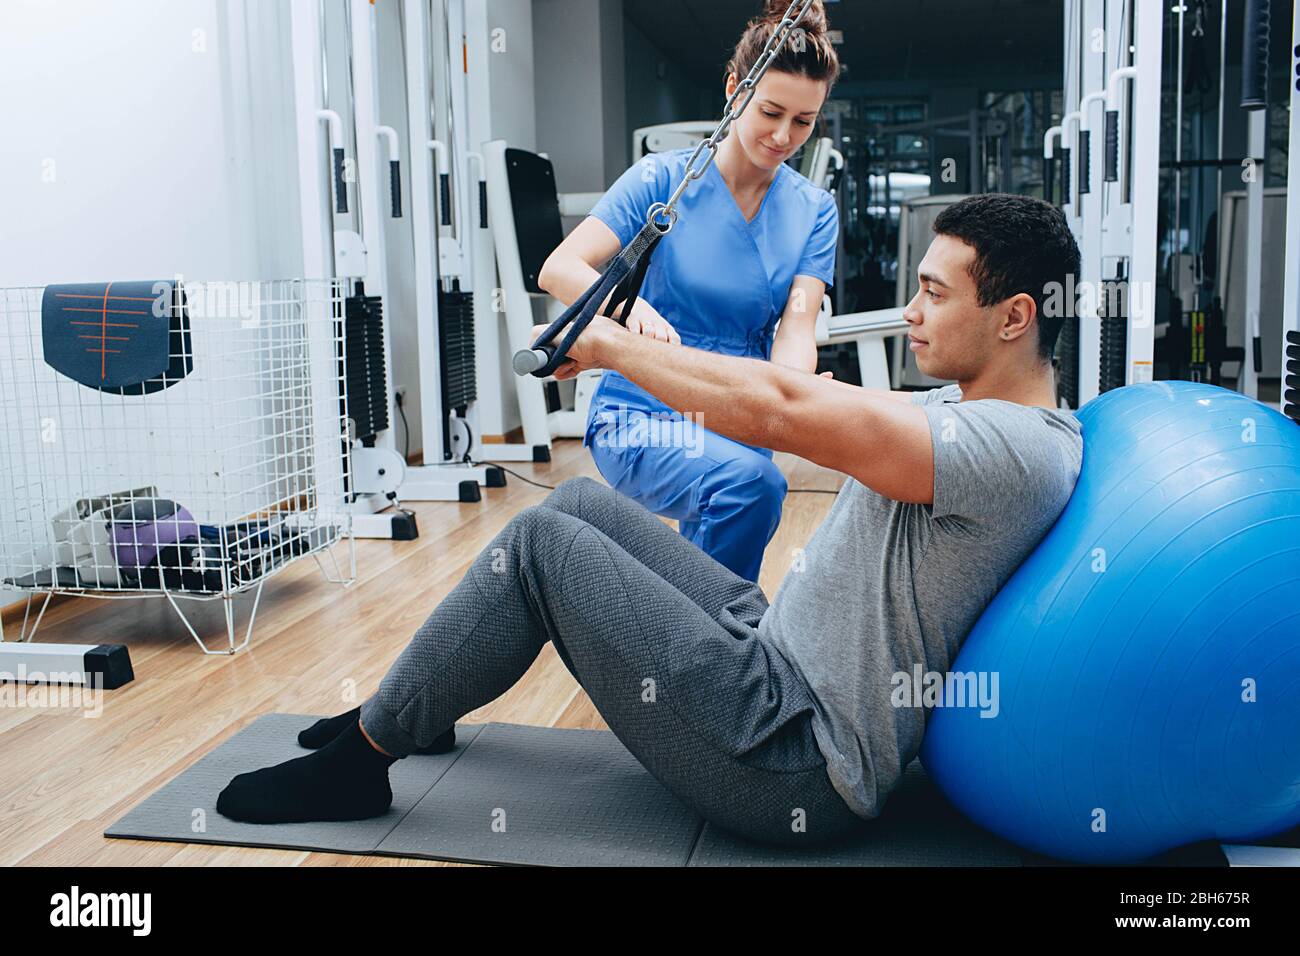 le kinésiologue aide un homme de race mixte à faire des exercices pour renforcer ses muscles du dos. traitement de la douleur du dos à l'aide de kinésithérapie. Banque D'Images